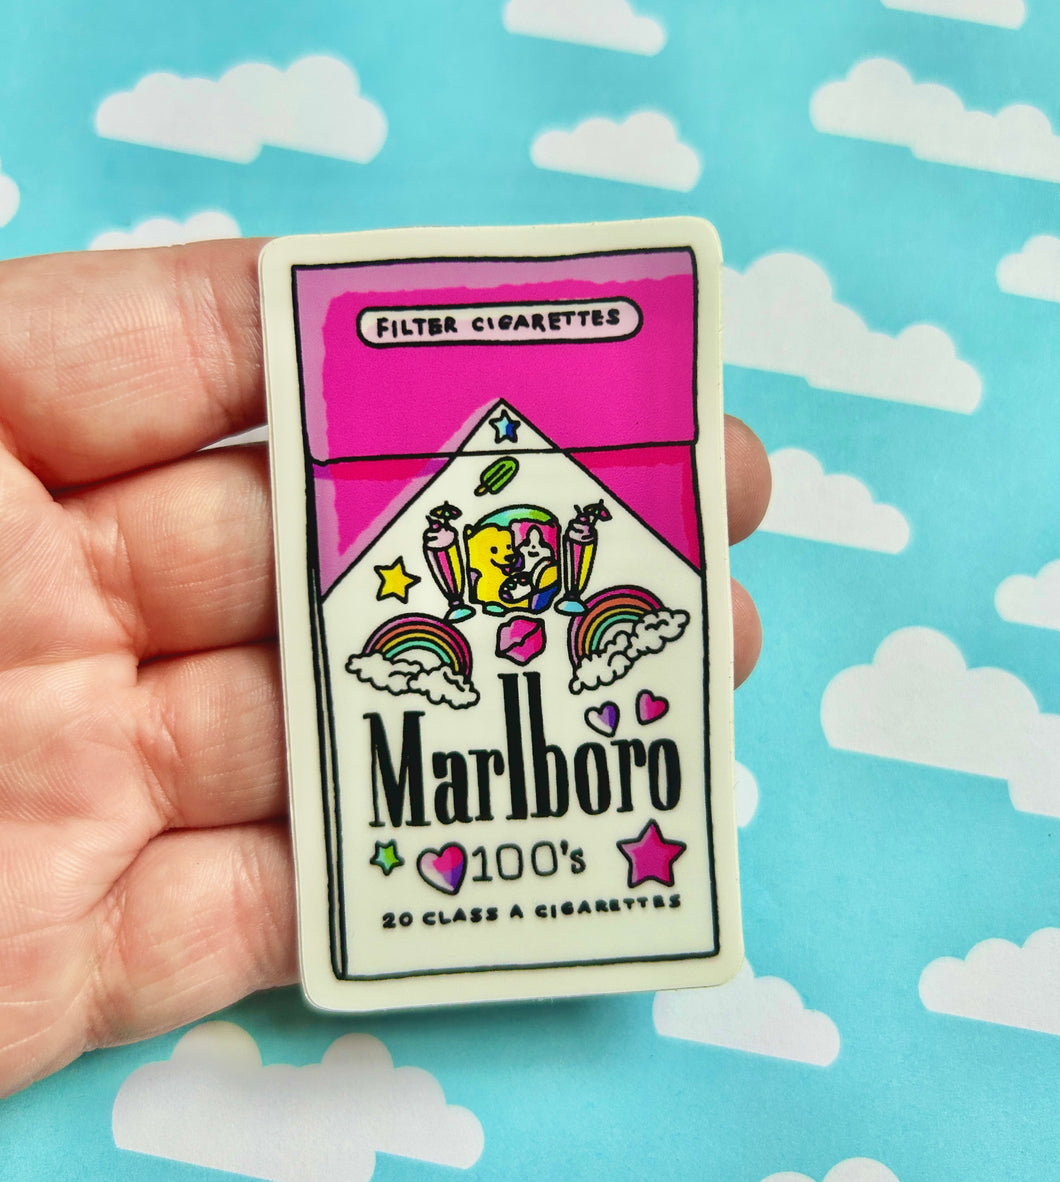 90’s Themed Cigarette Pack Sticker